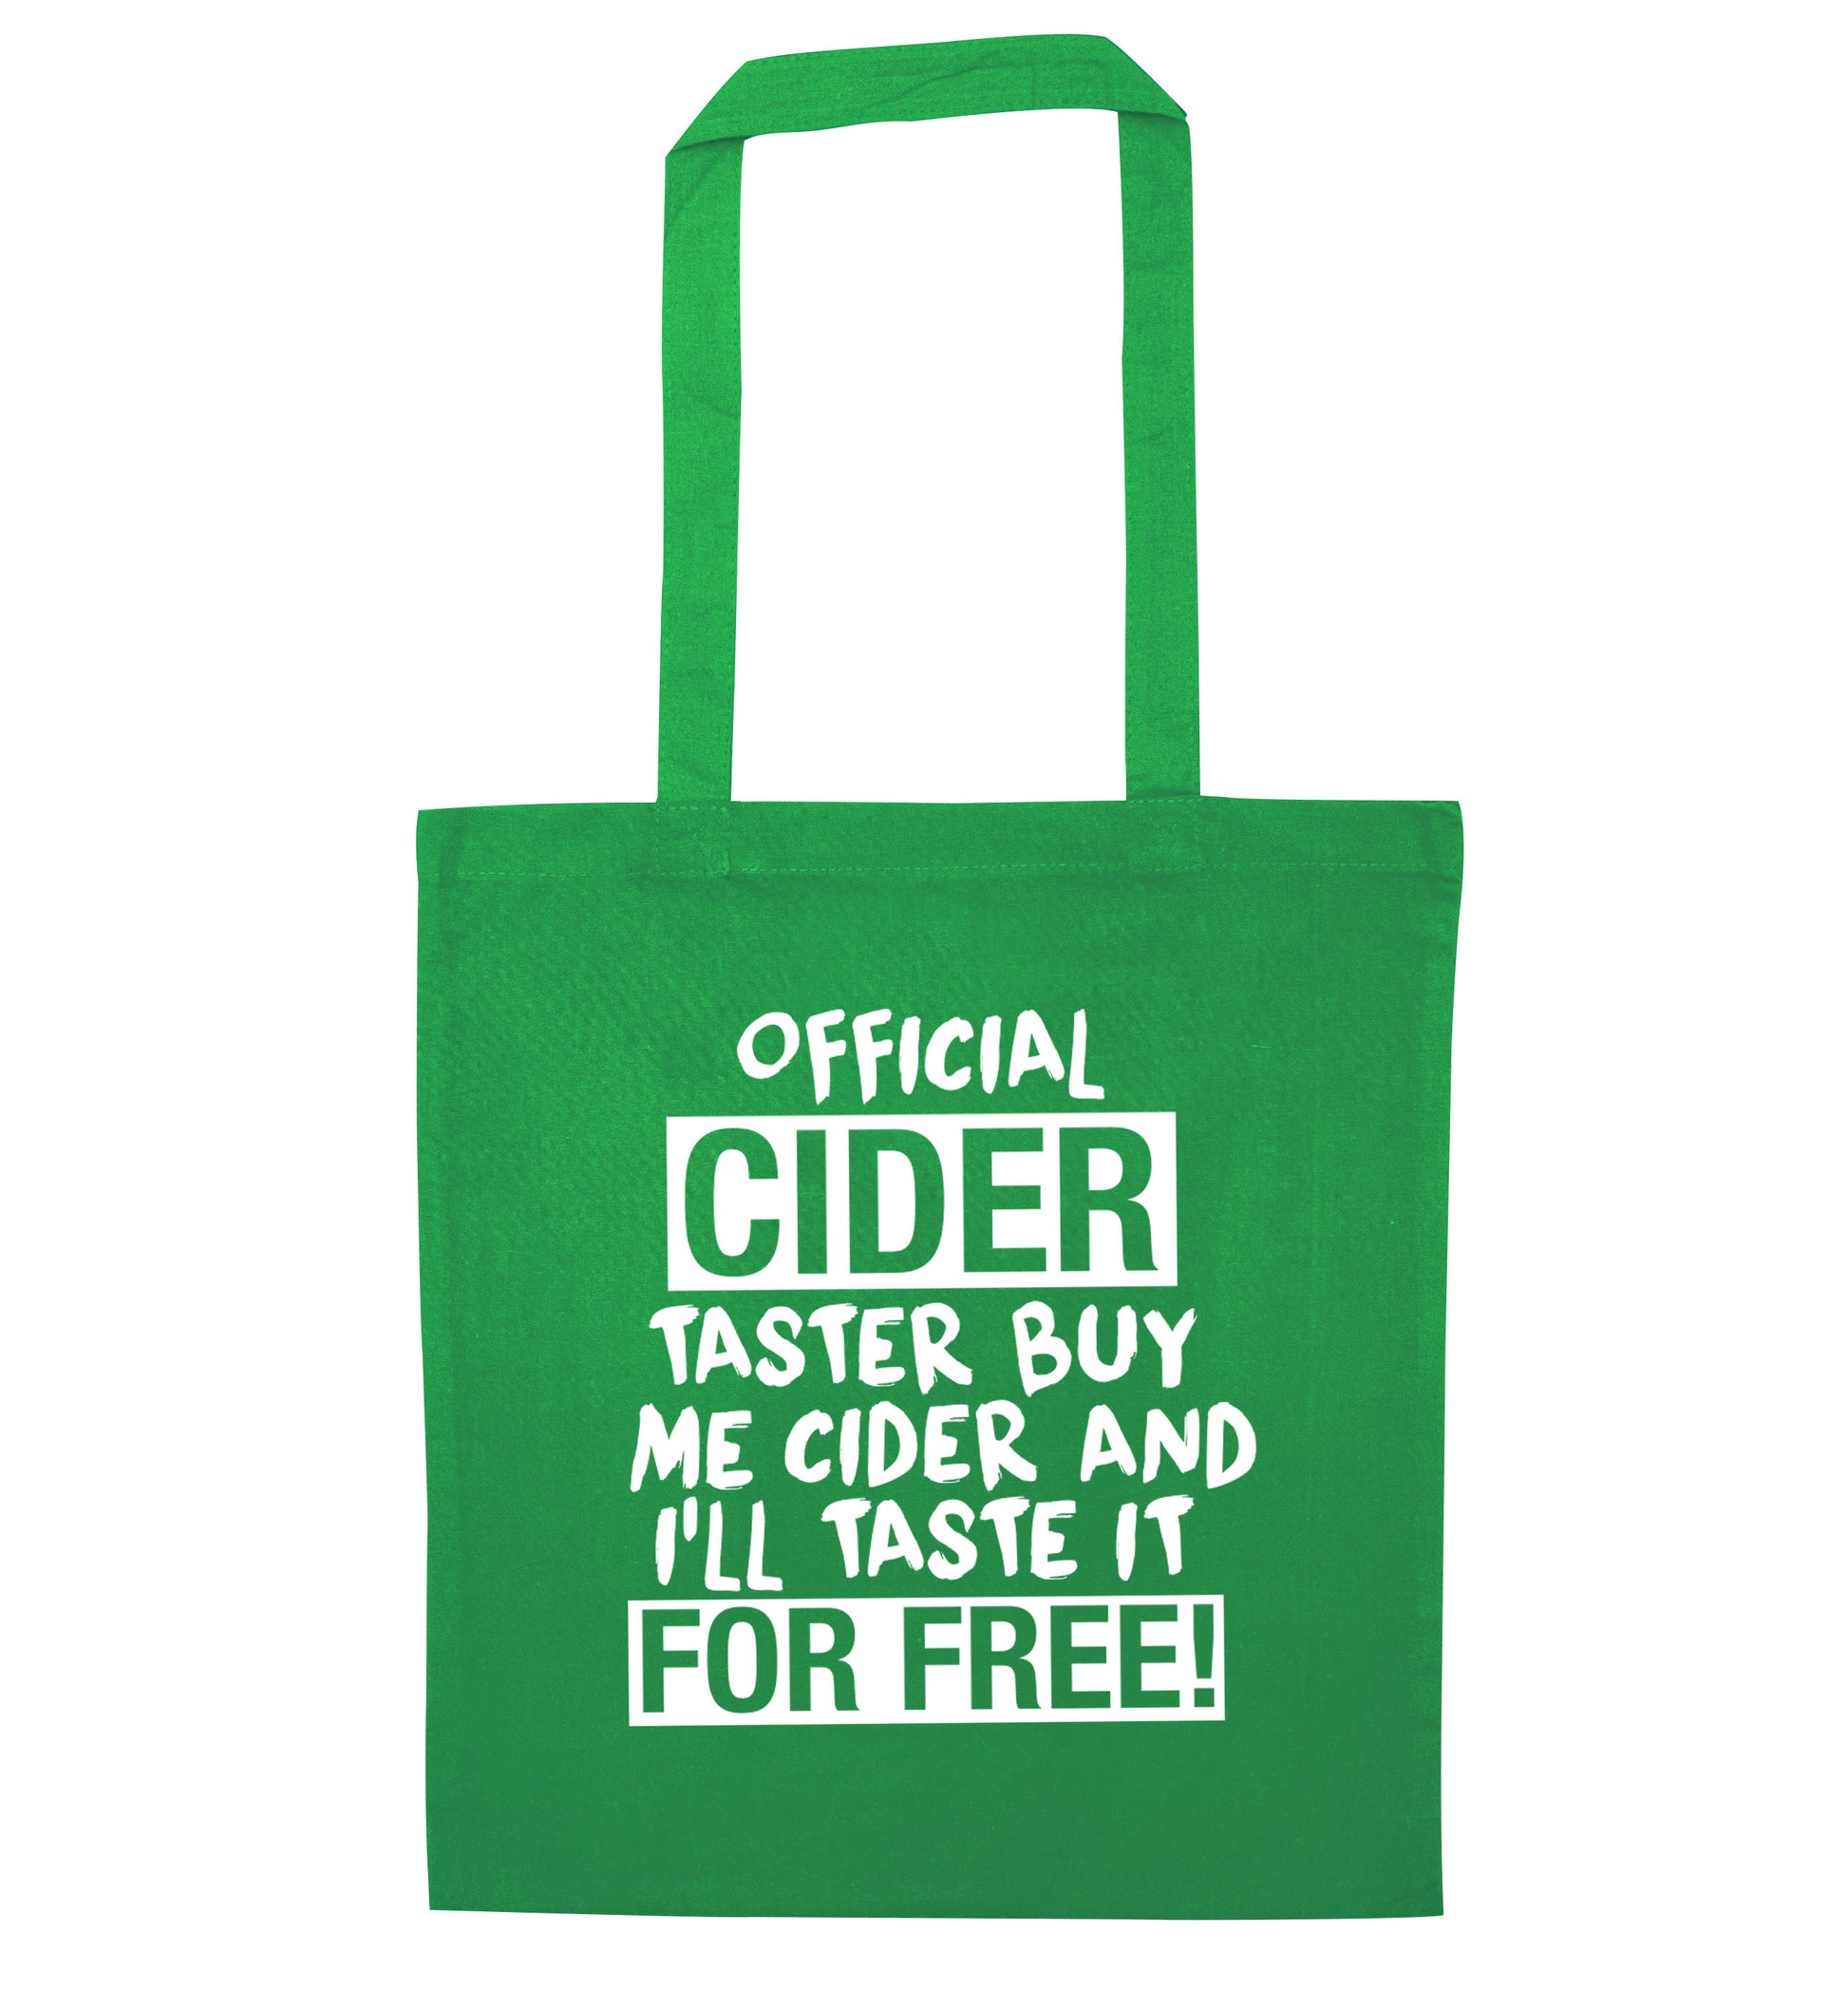 Official cider taster buy me cider and I'll taste it for free! green tote bag